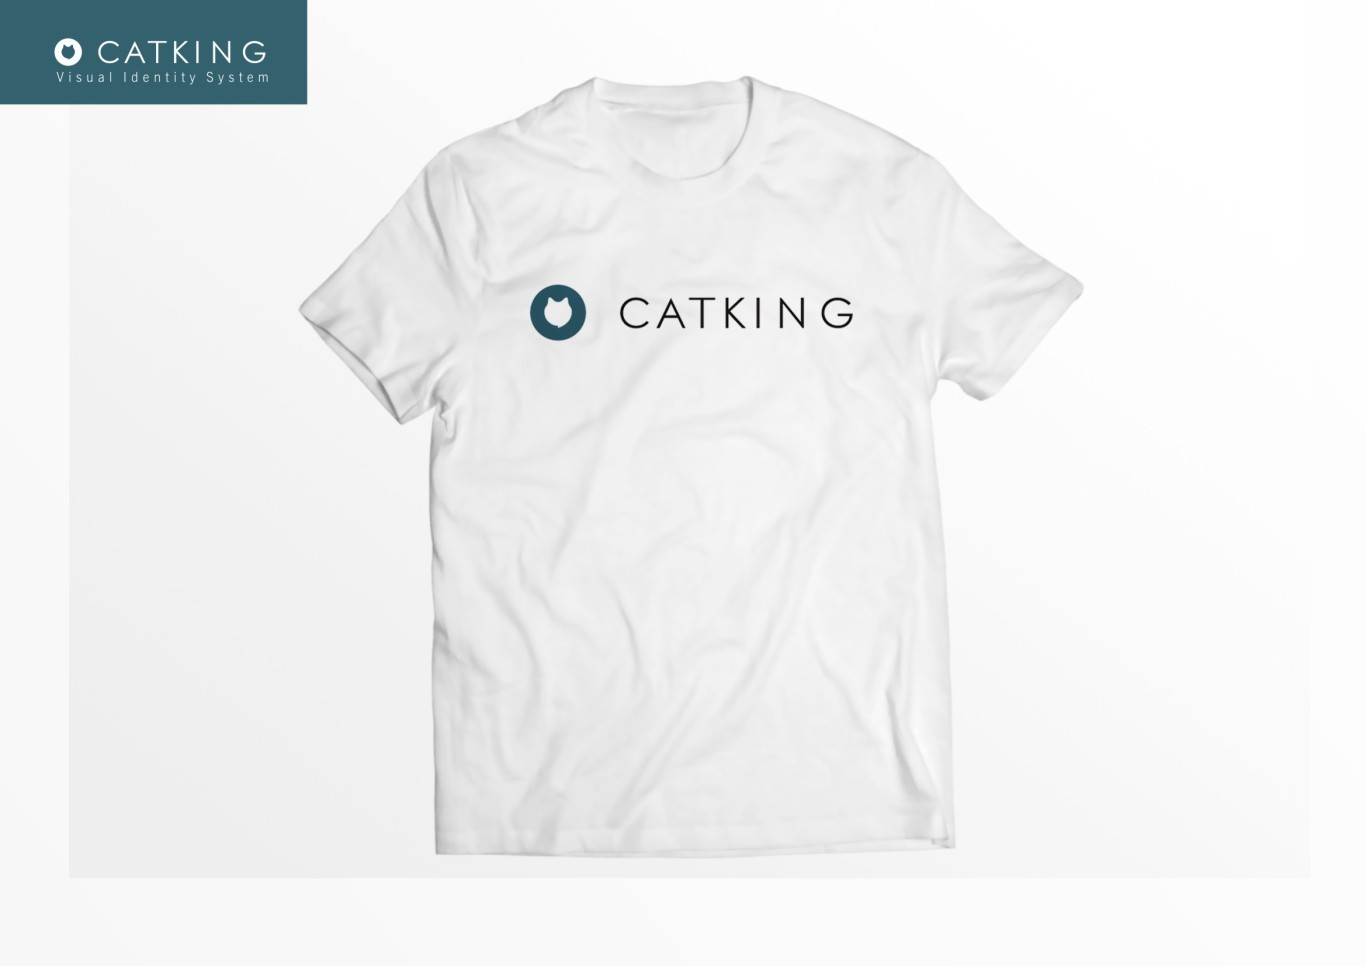 猫王/CATKING 视觉识别系统升级&包装升级图27